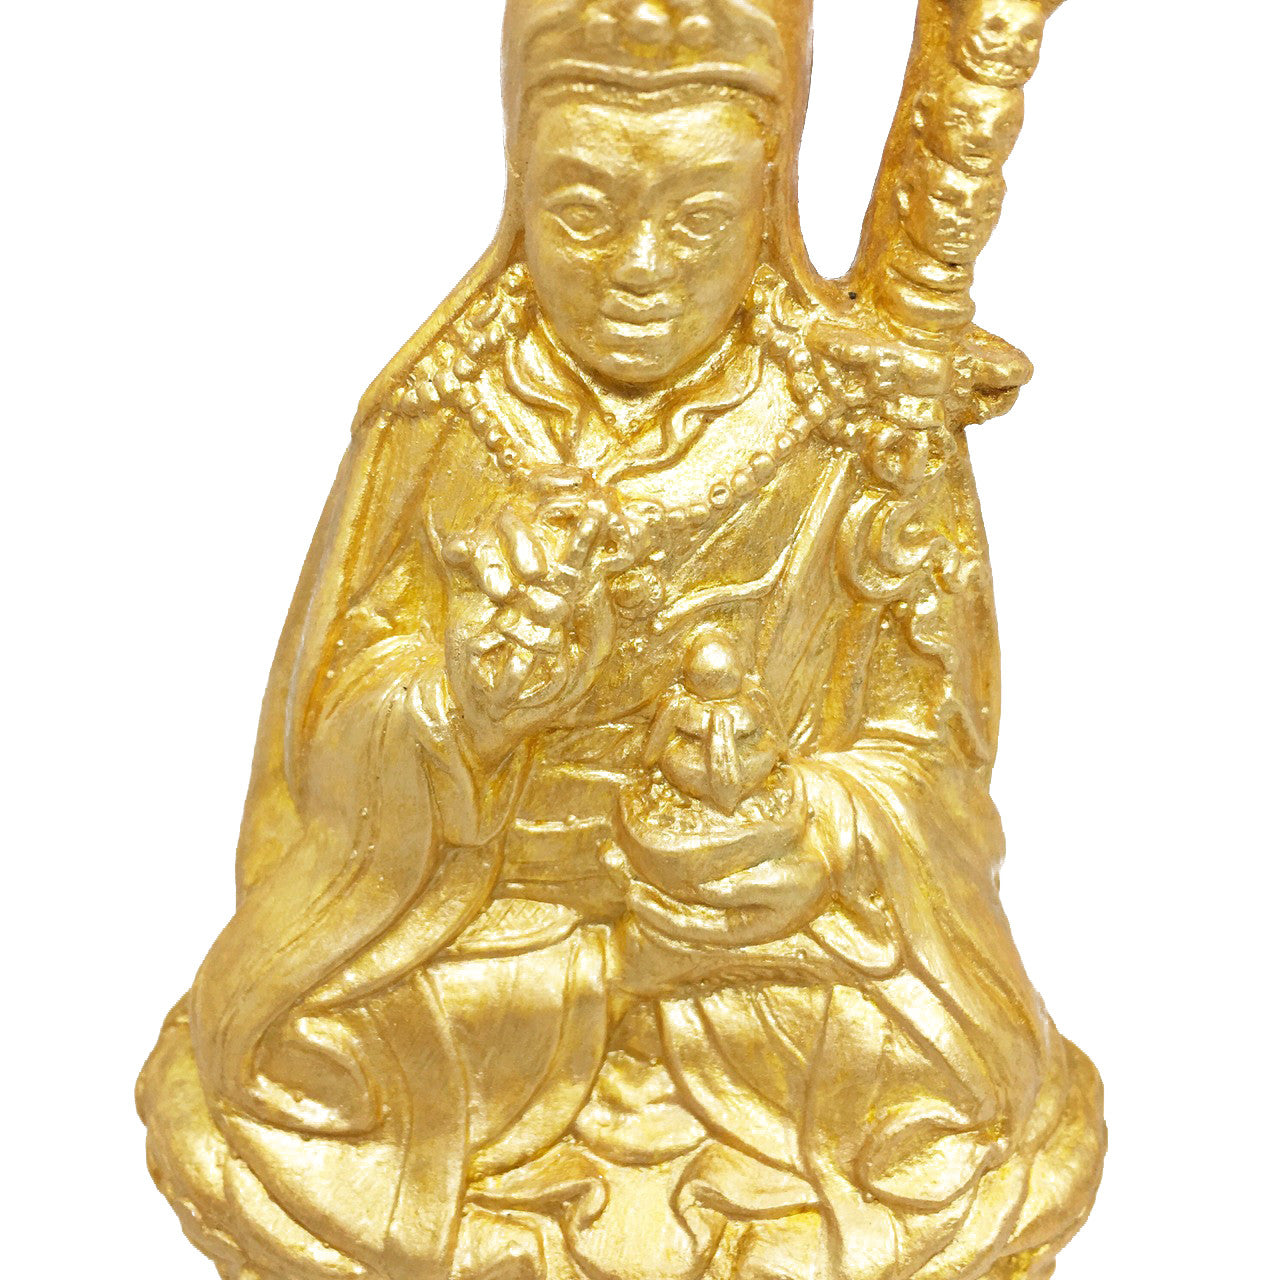 Golden Guru Rinpoche Tsa Tsa